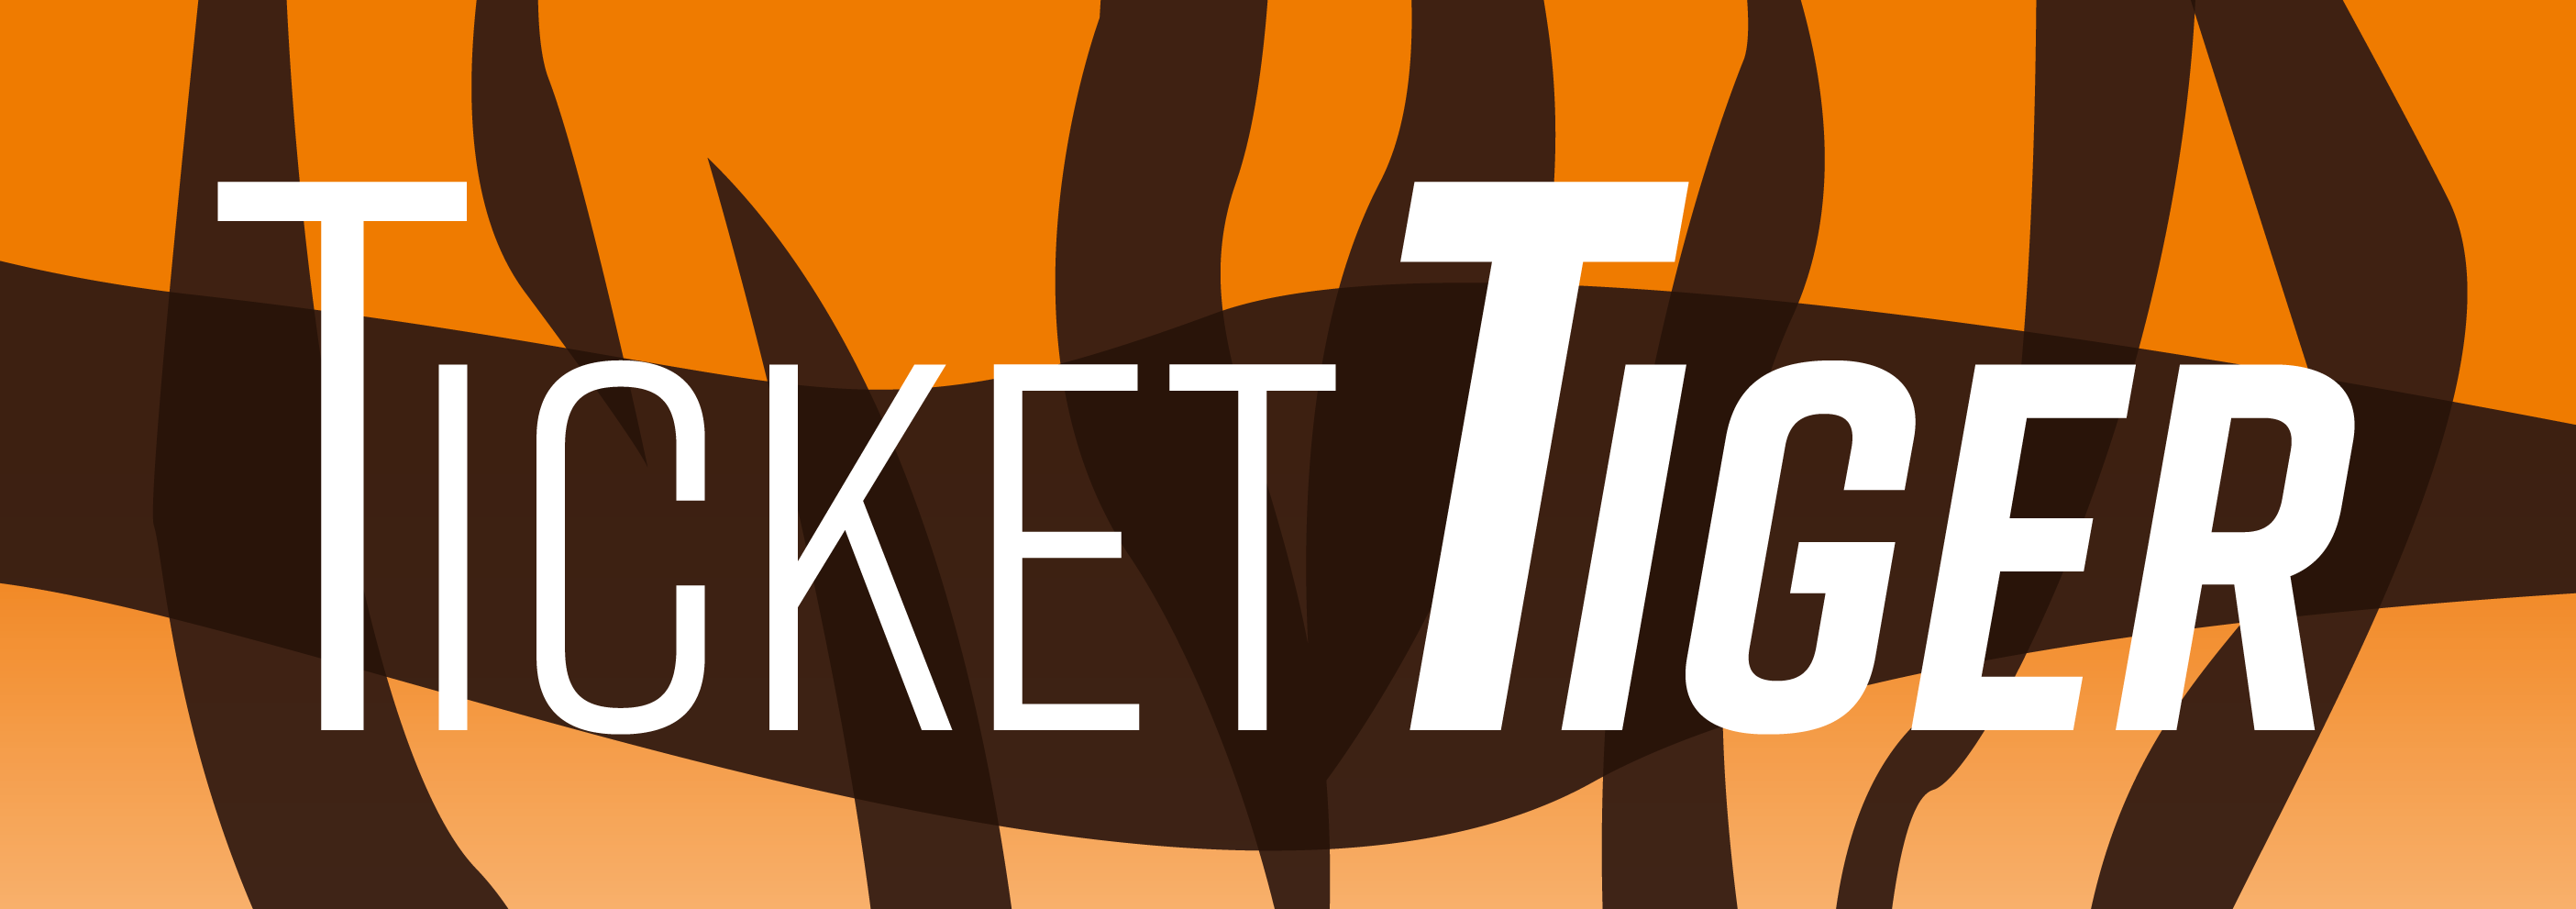 Ticket Tiger